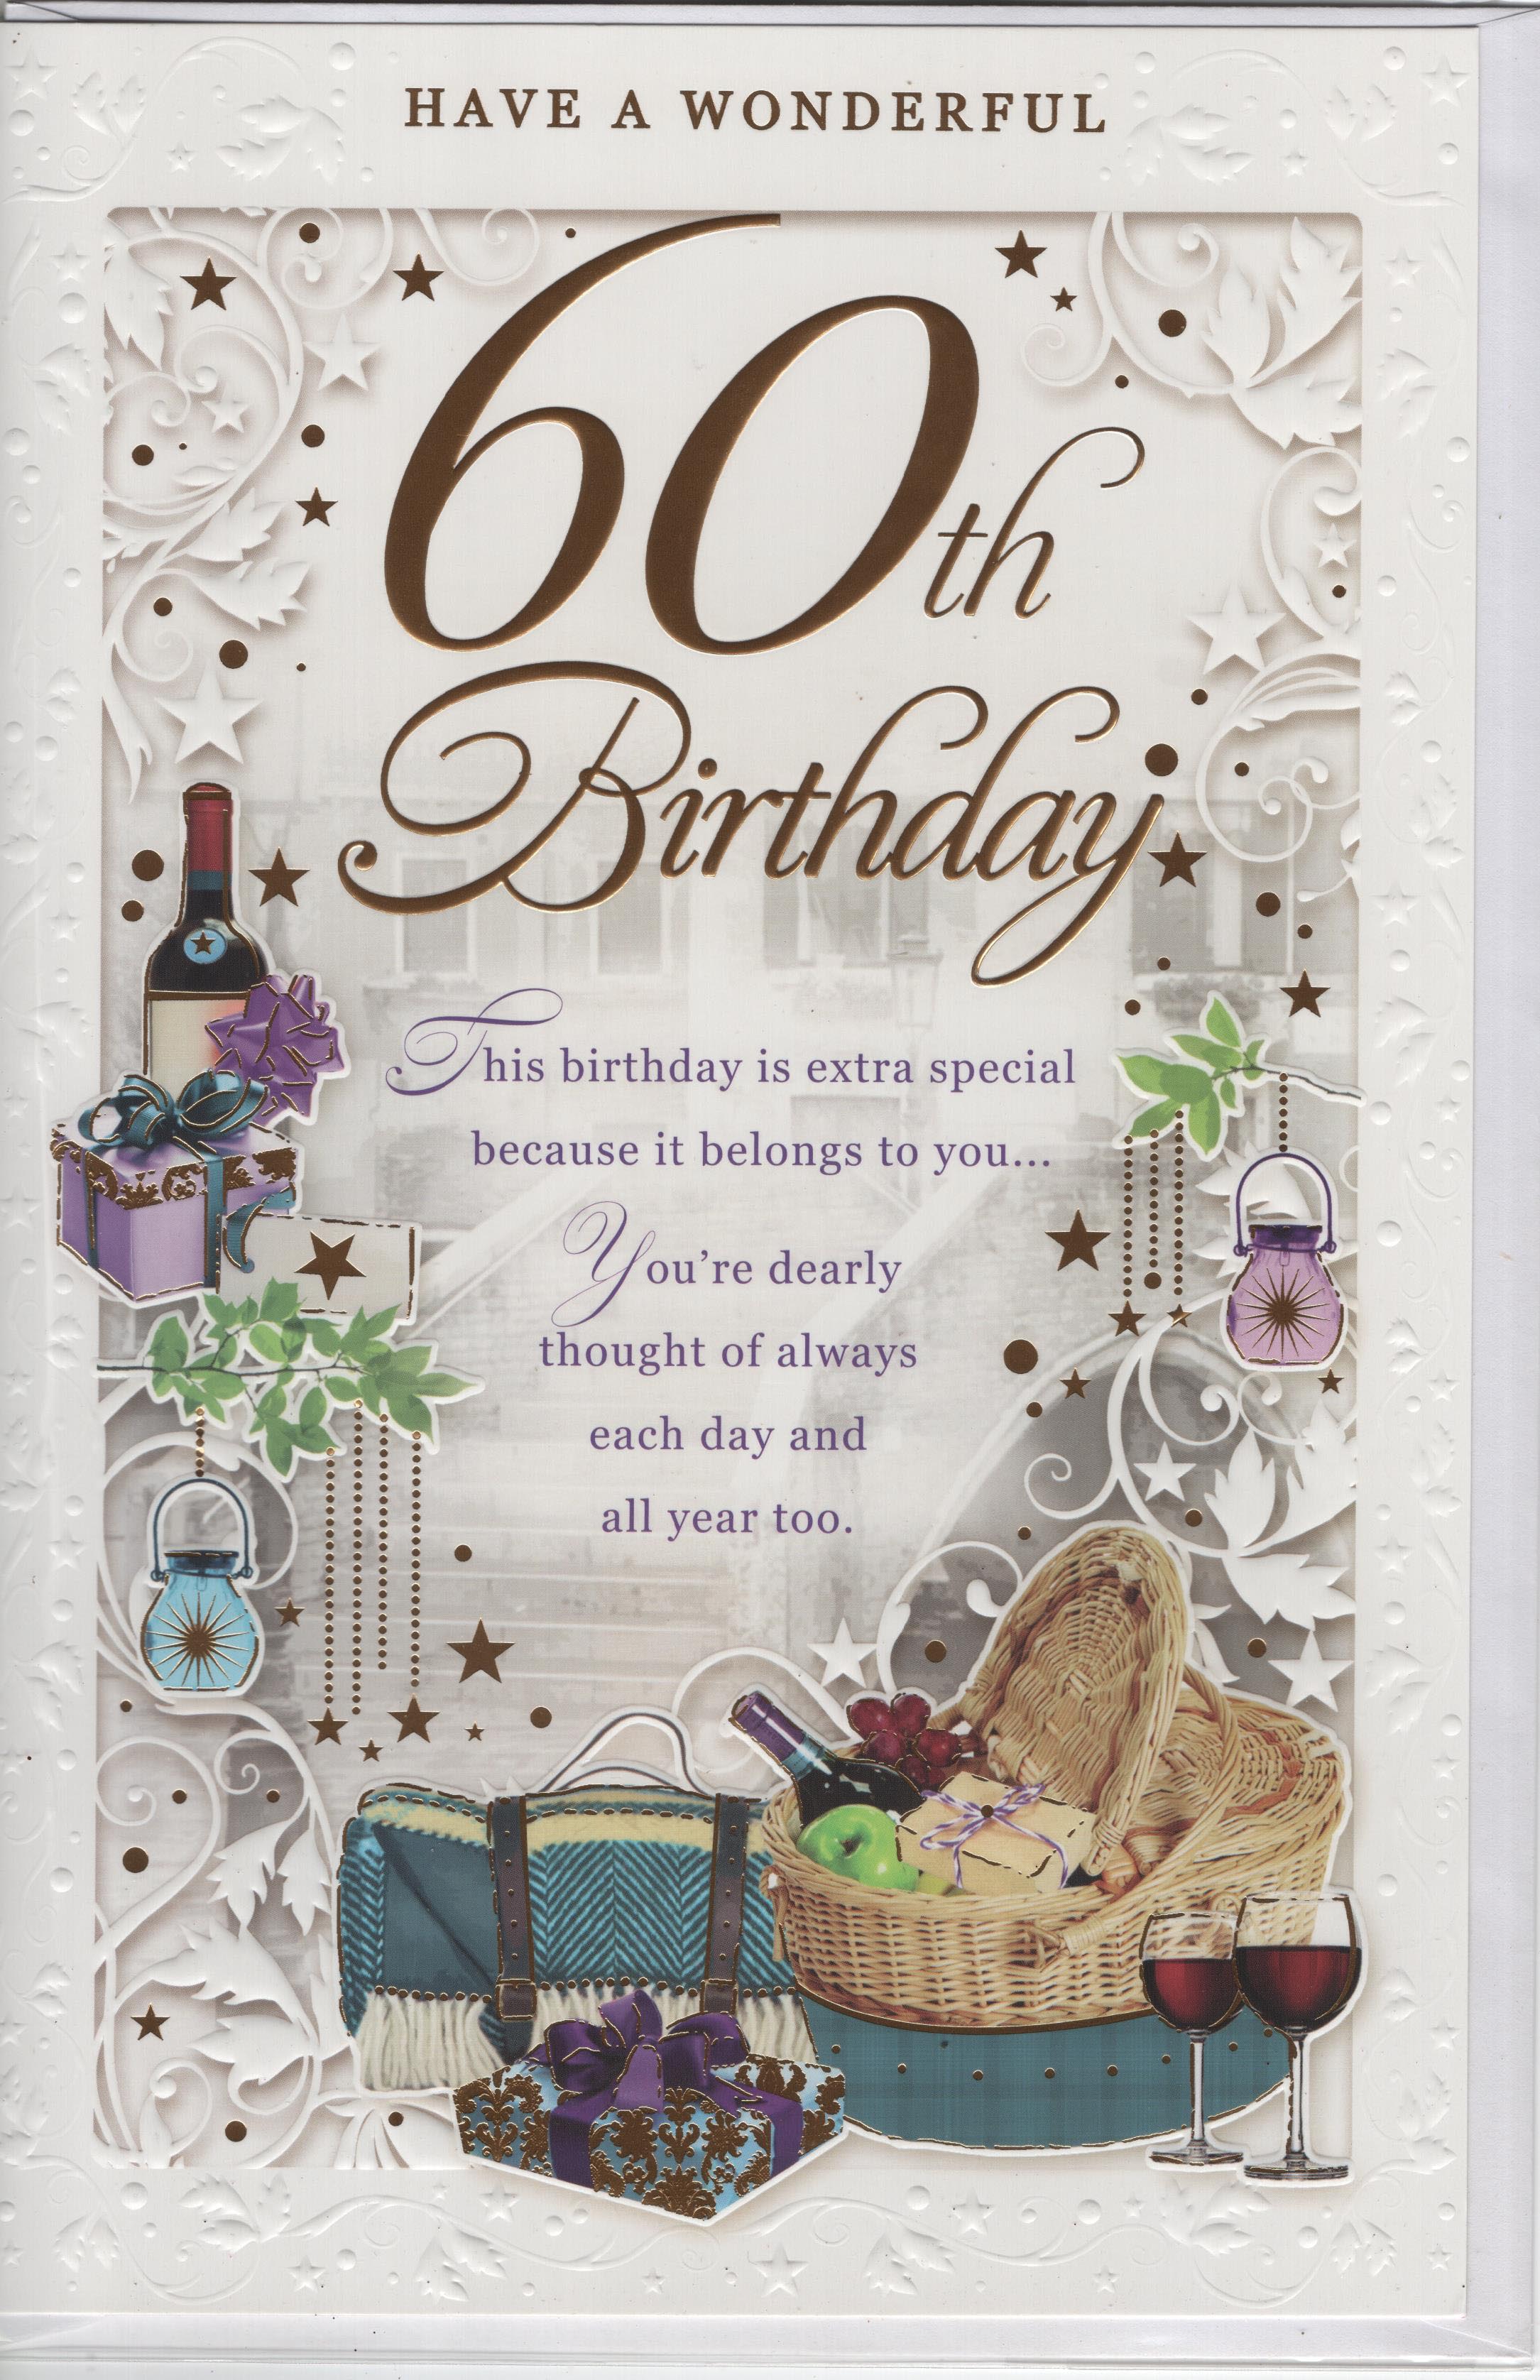 Have a Wonderful 60th Birthday